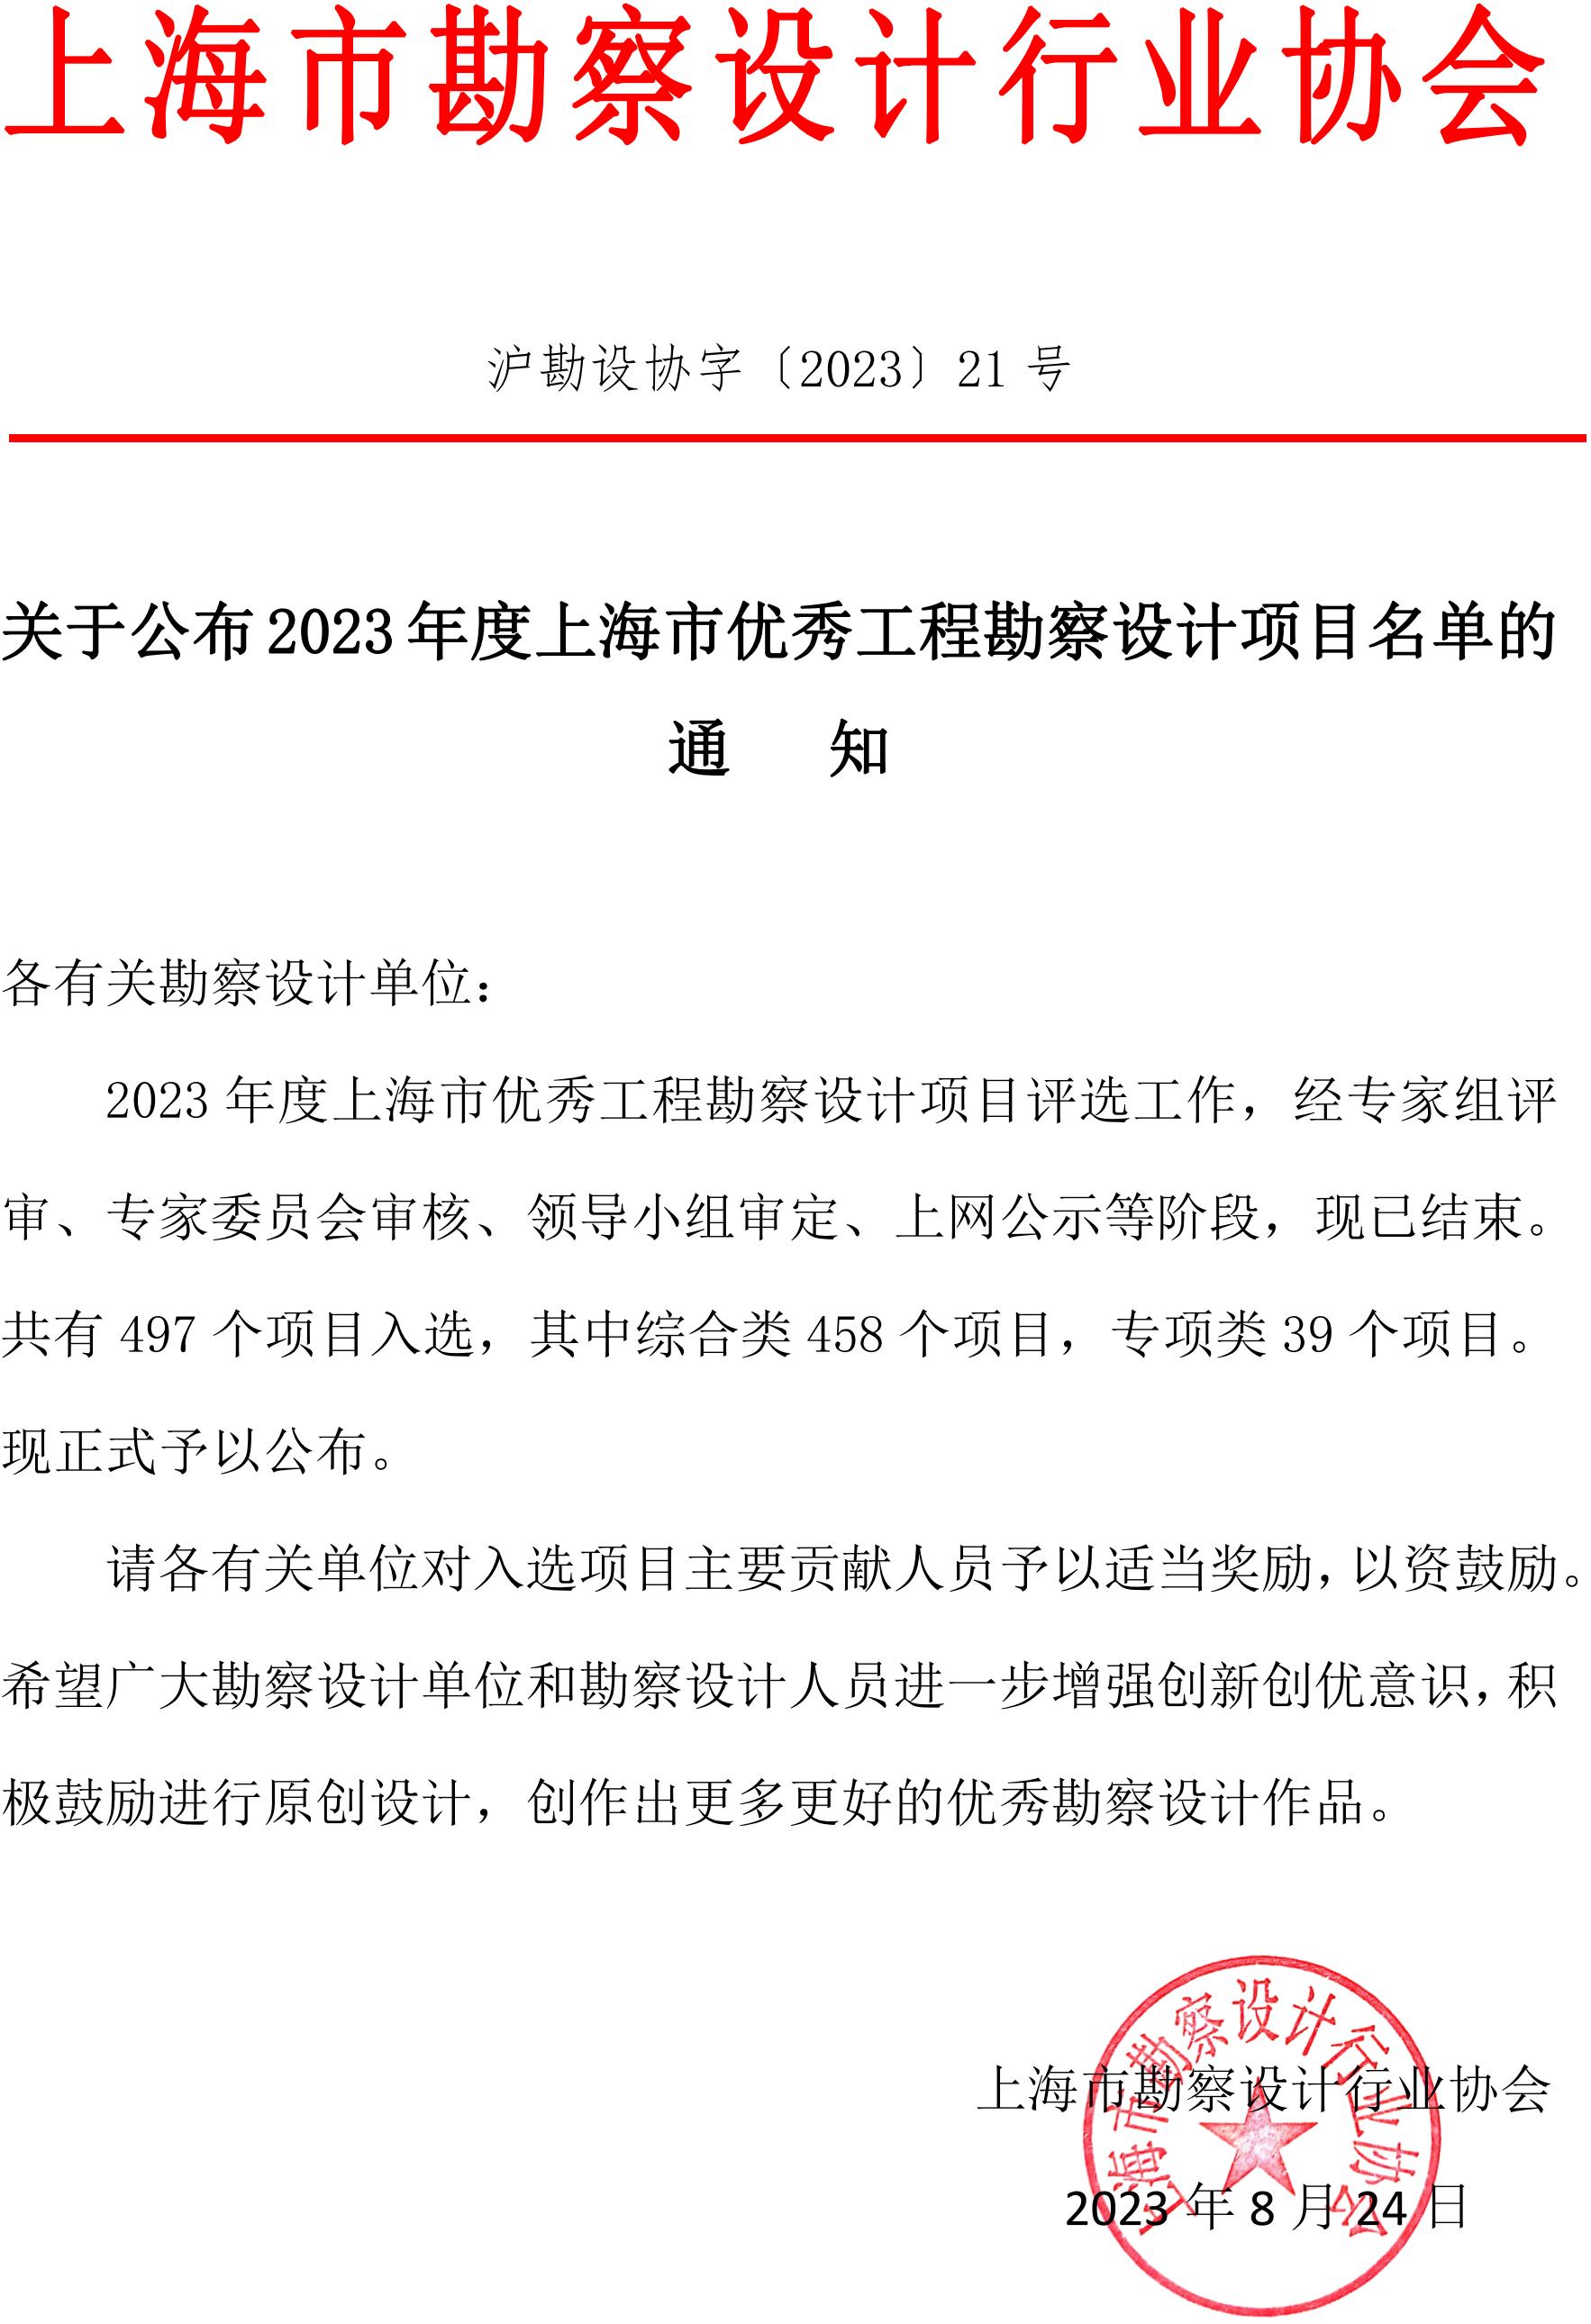 关于公布2023年度上海市优秀工程勘察设计项目名单的通知_00(1).jpg